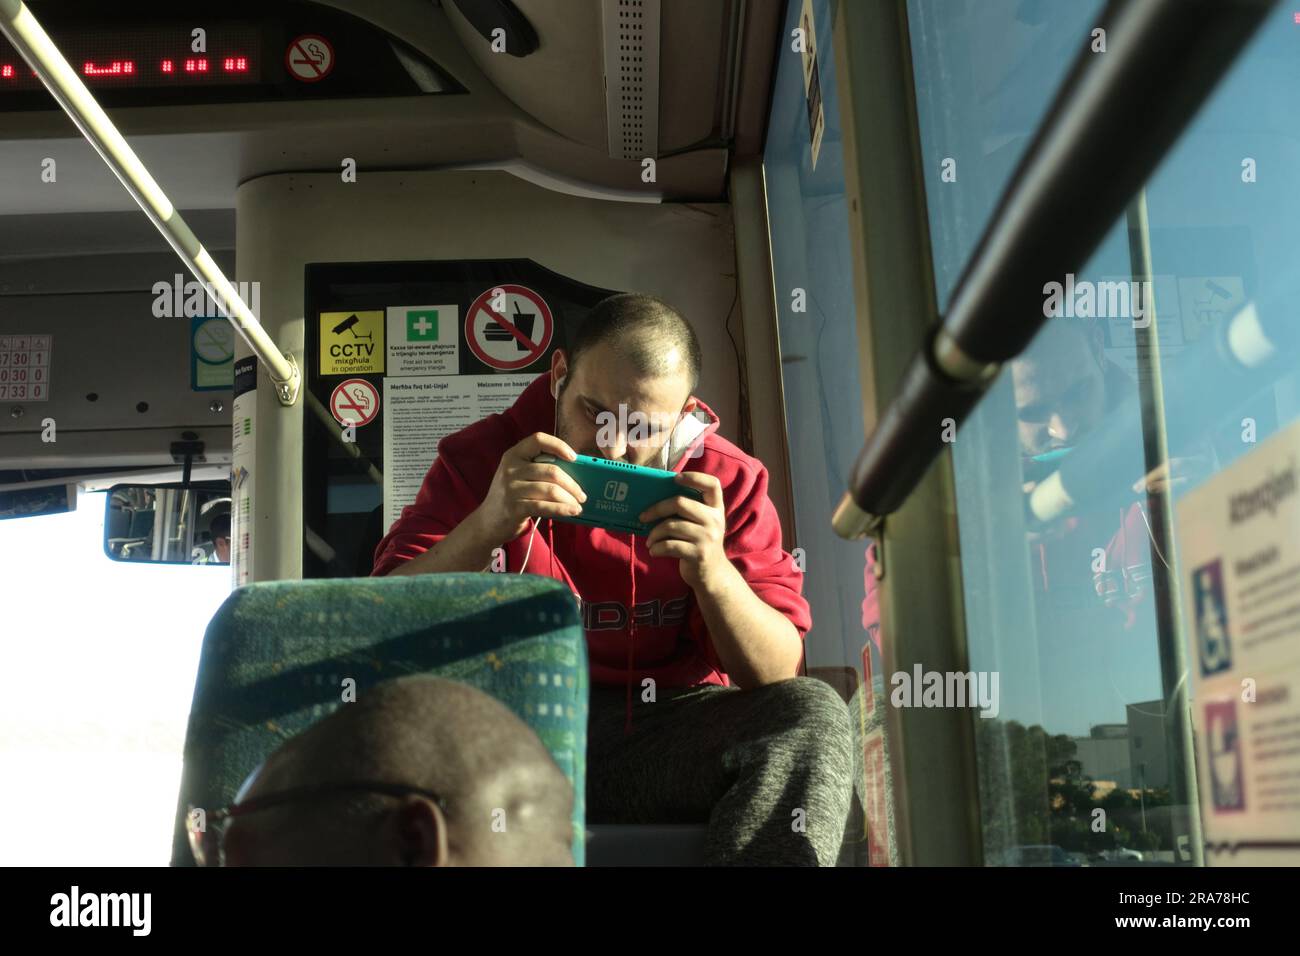 Giovane seduto su un autobus pubblico e giocando con i videogiochi, la Valletta, Malta Foto Stock